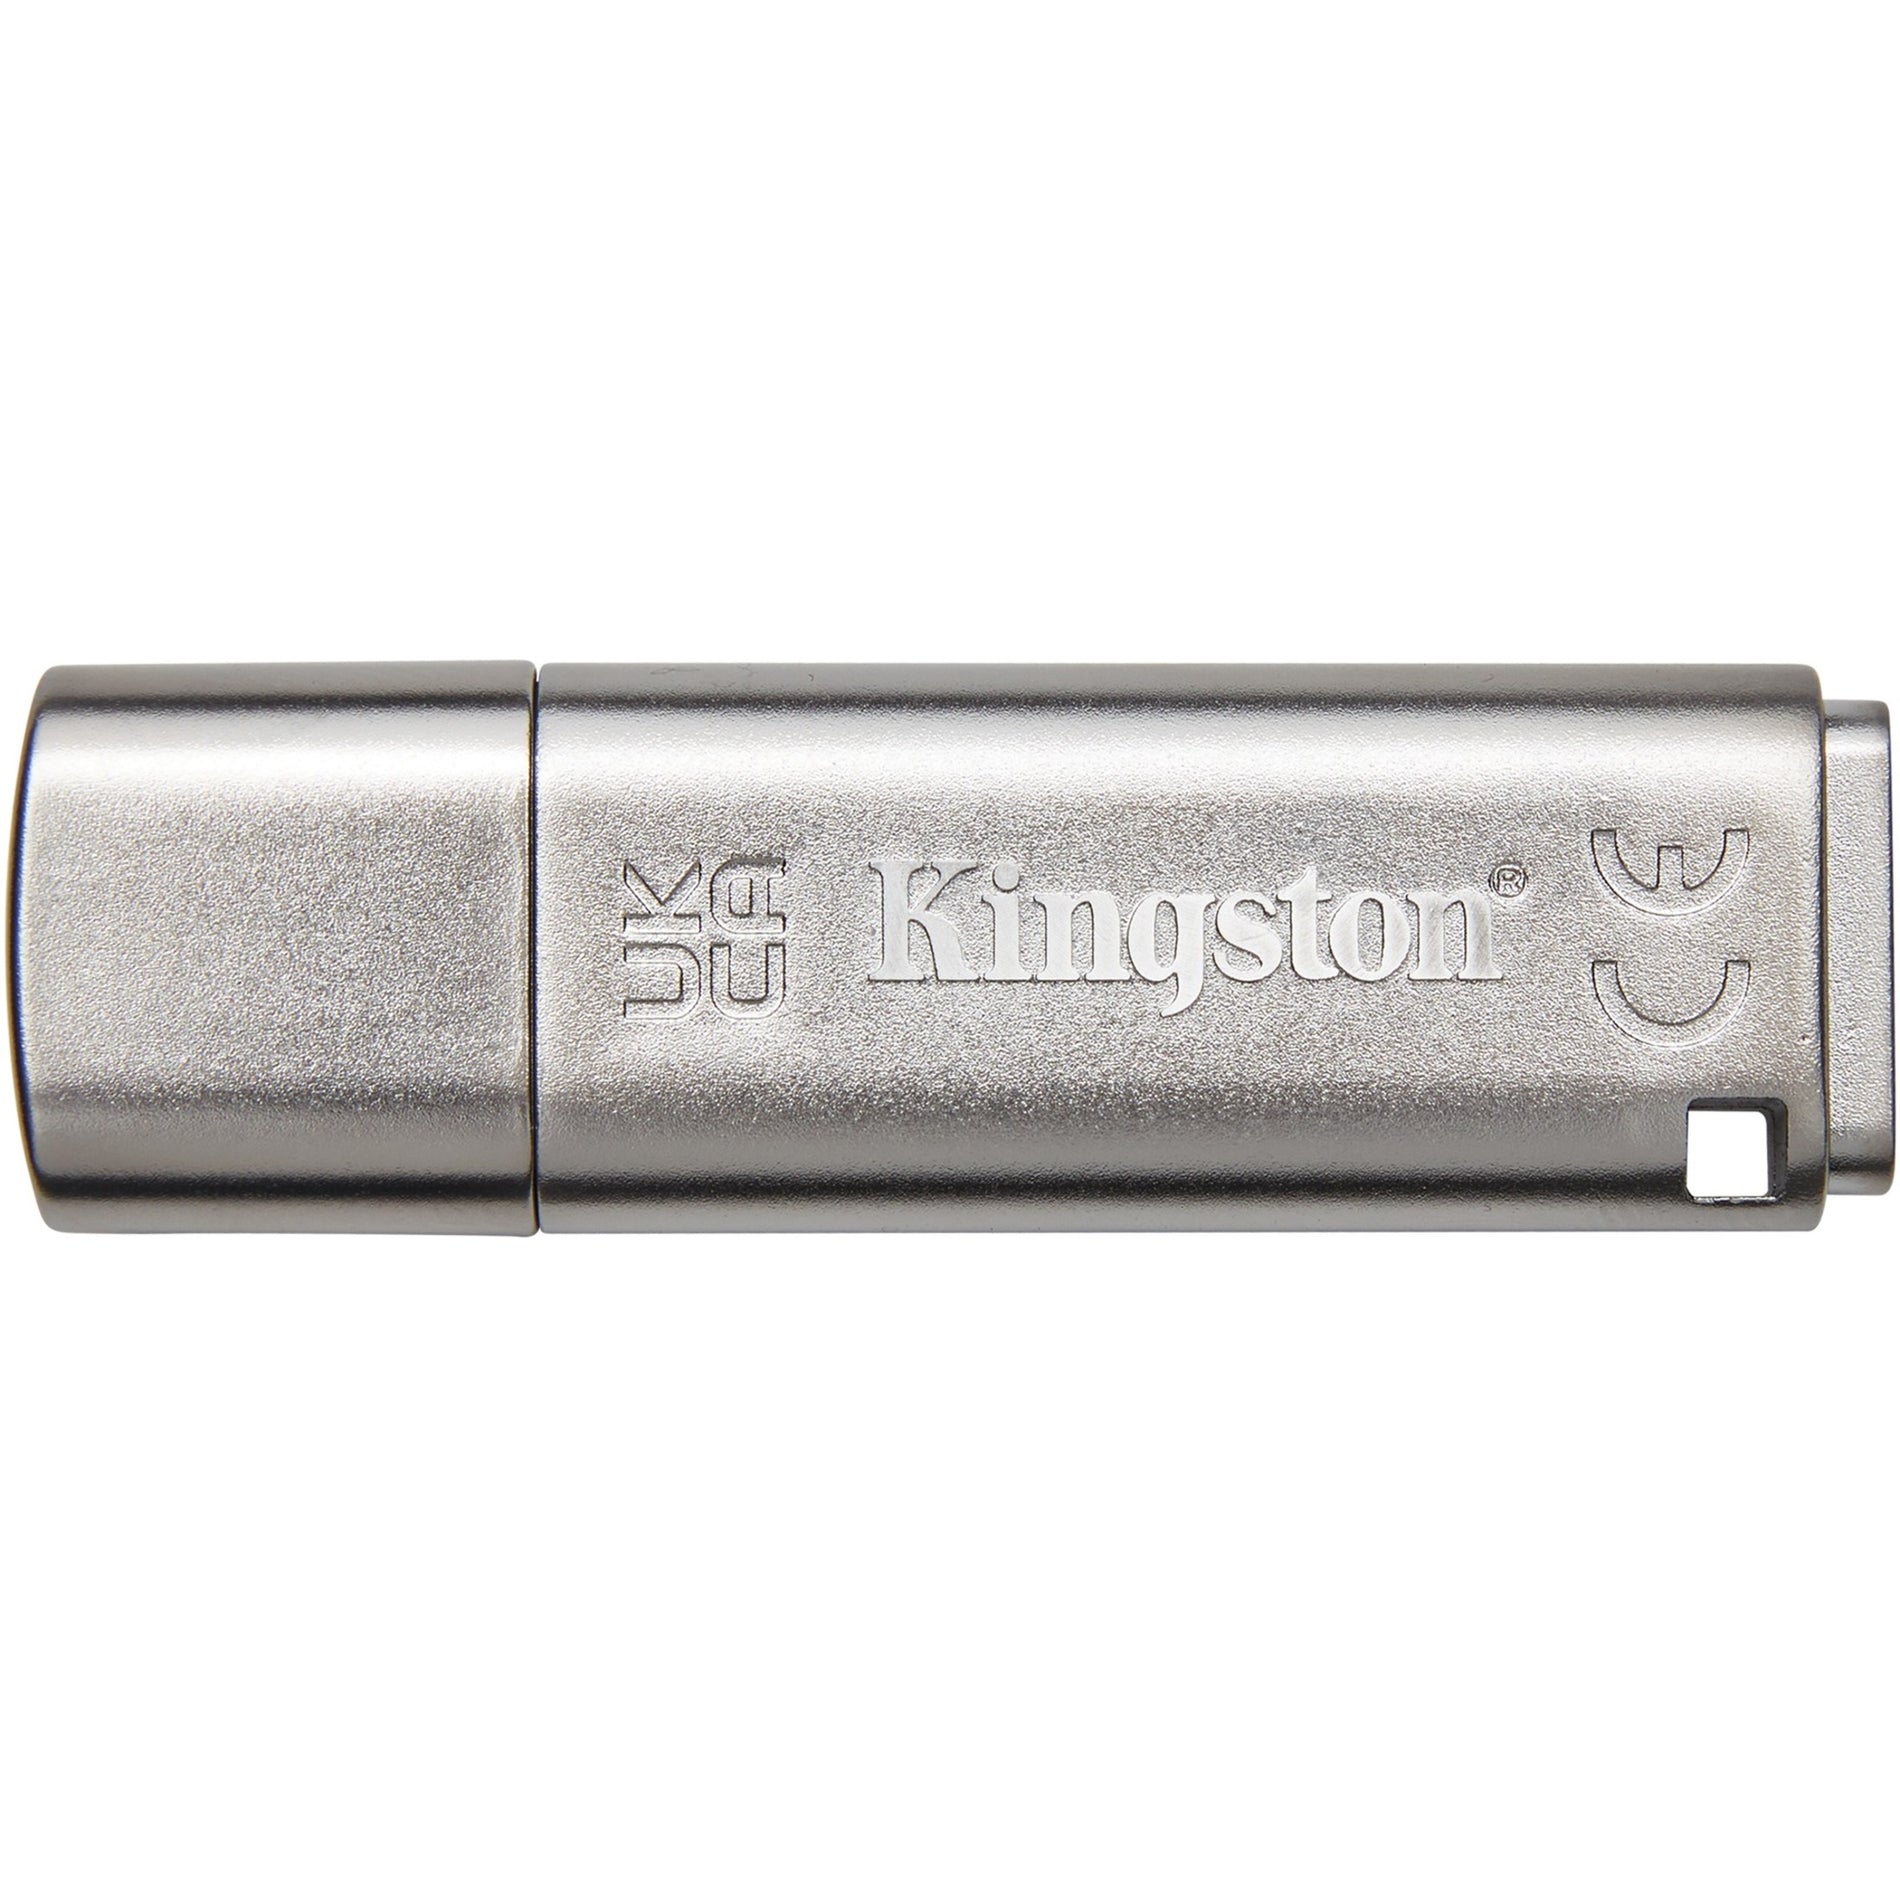 IronKey Locker+ 50 USB Flash Drive (IKLP50/64GB)